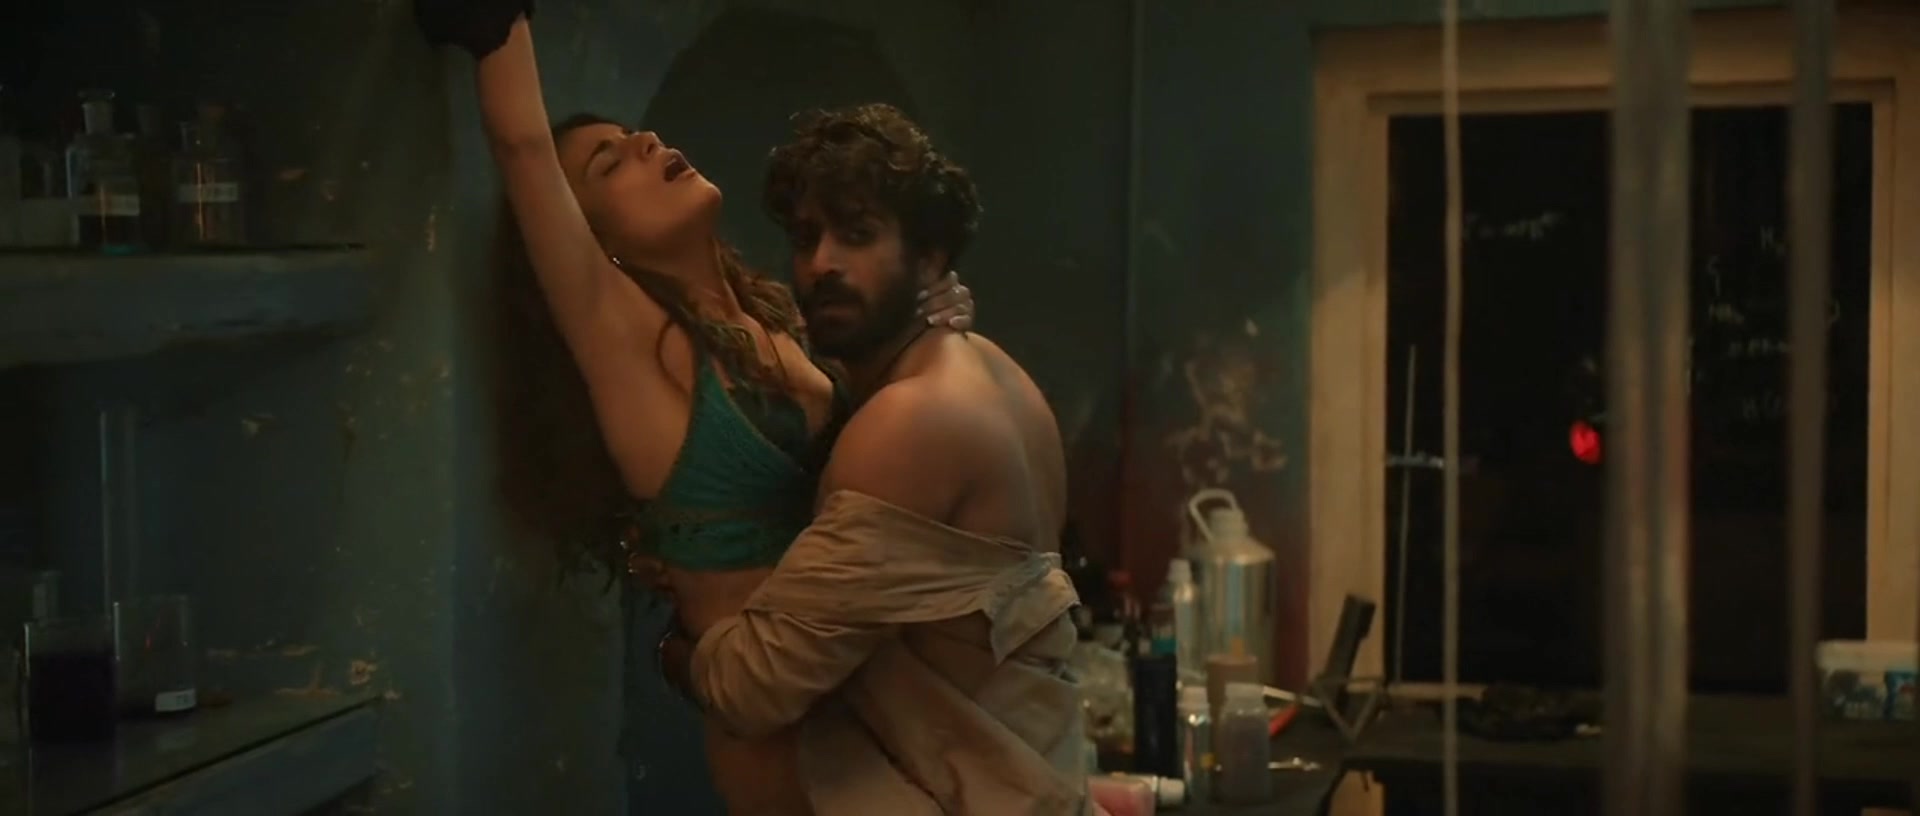 Radhika madan hot sex scene